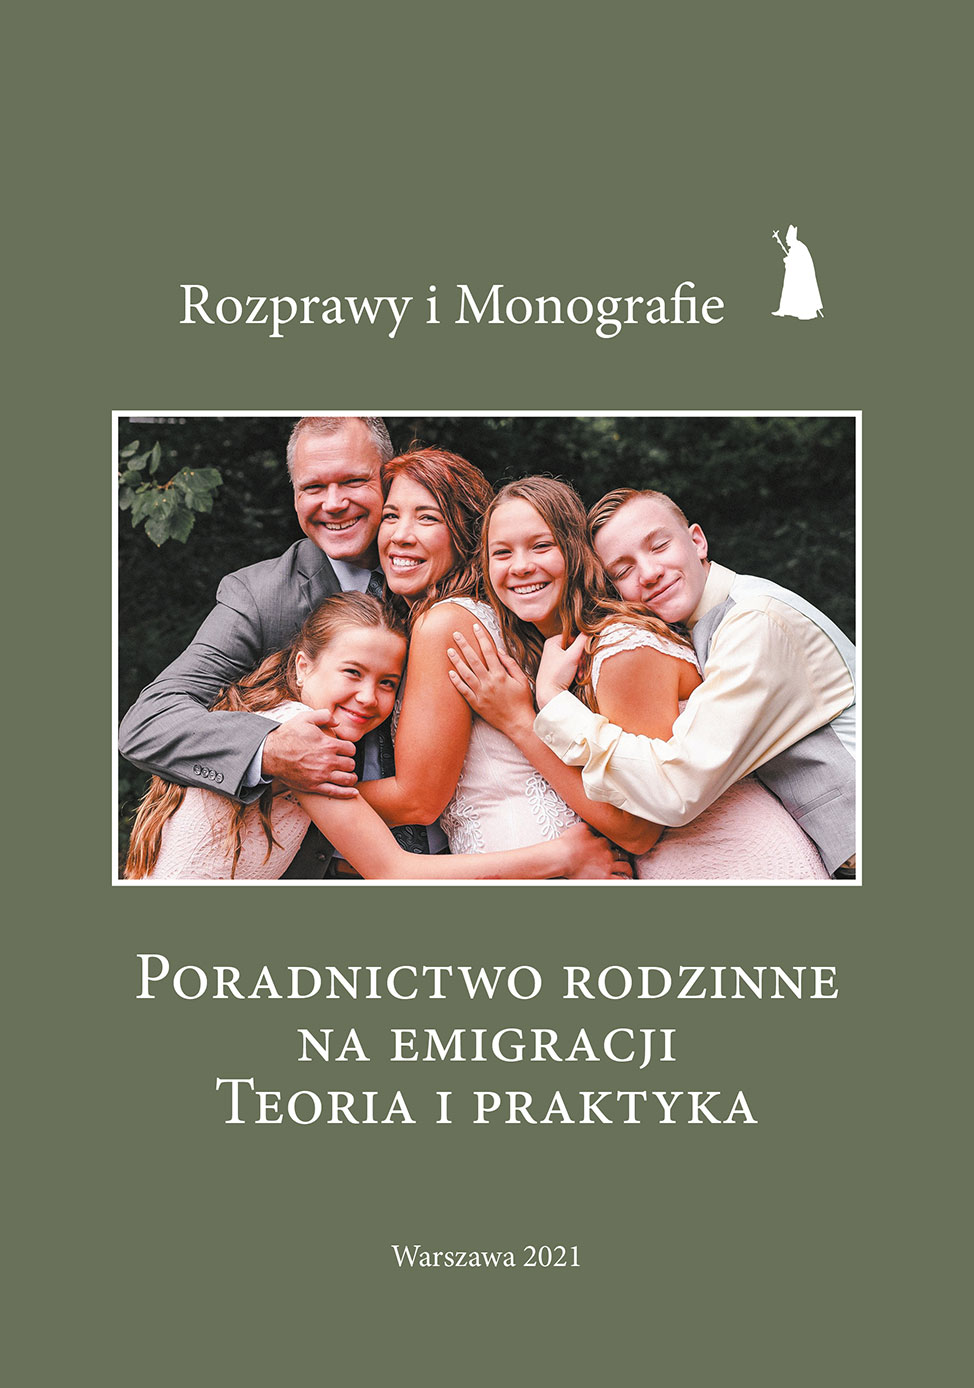 Poradnictwo rodzinne na emigracji. Teoria i praktyka, Instytut Papieża Jana Pawła II, Warszawa 2021